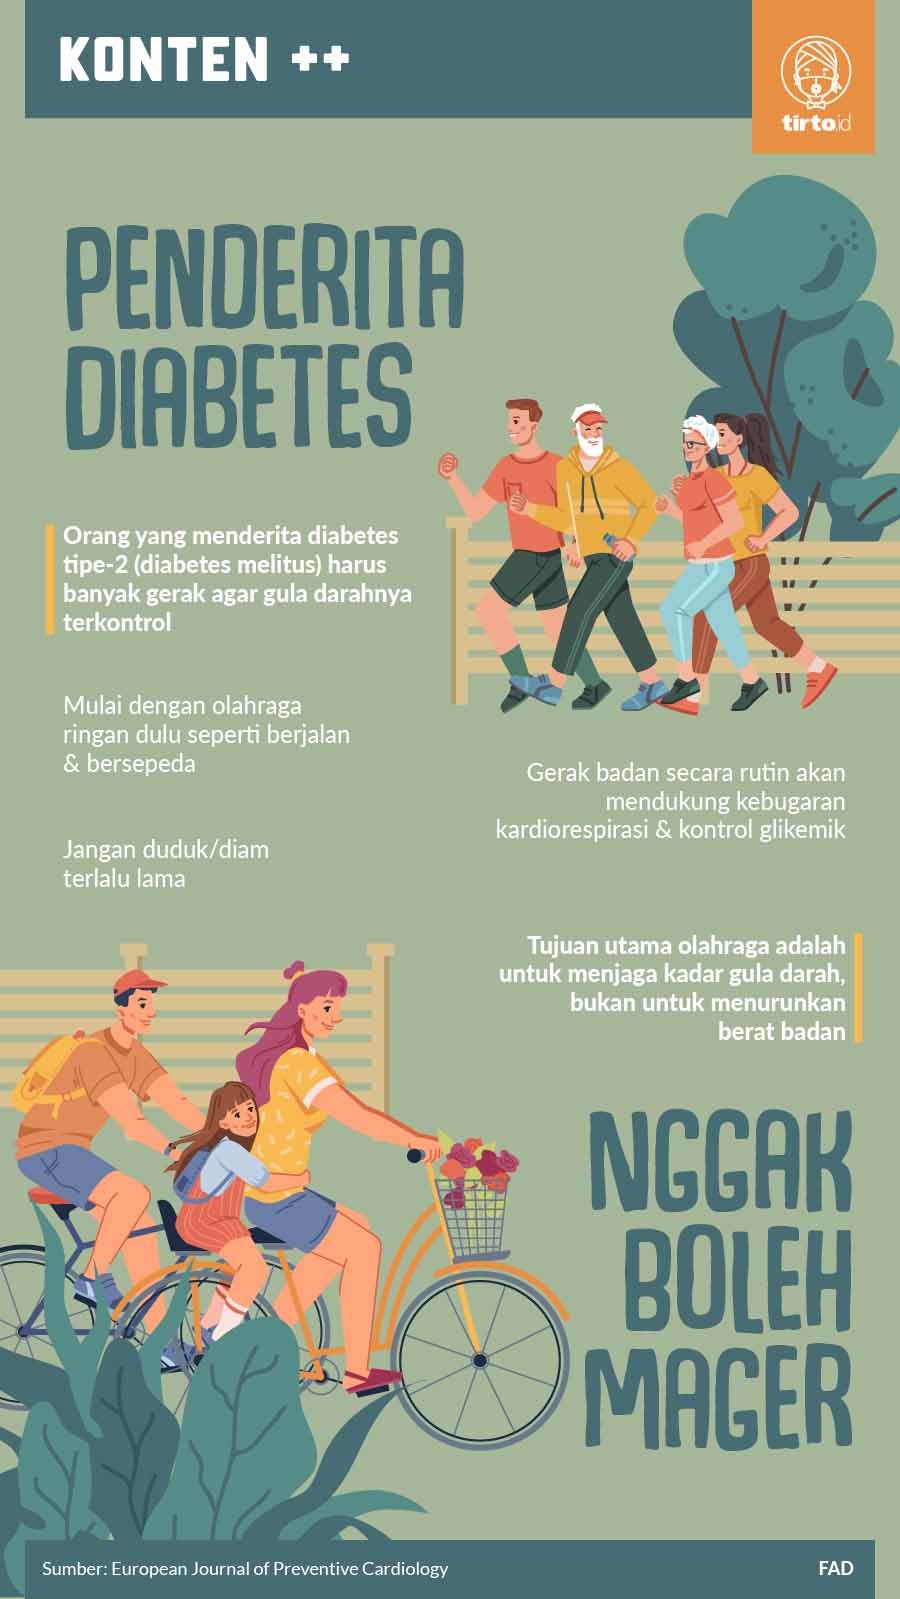 Infografik SC Penderita Diabetes Nggak Boleh Mager